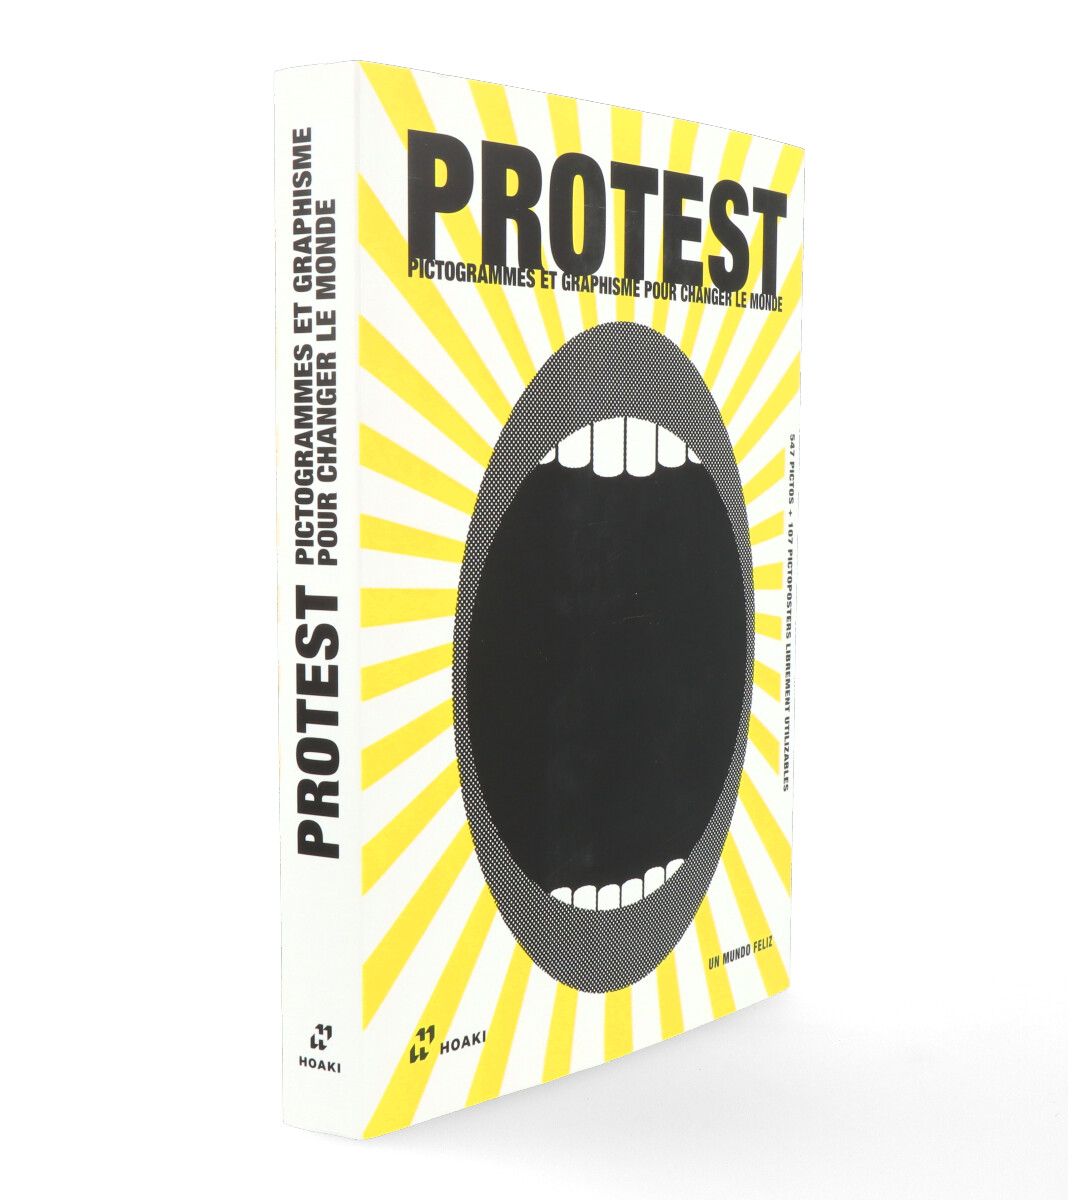 Pictogramas de protesta: gráficos para cambiar el mundo